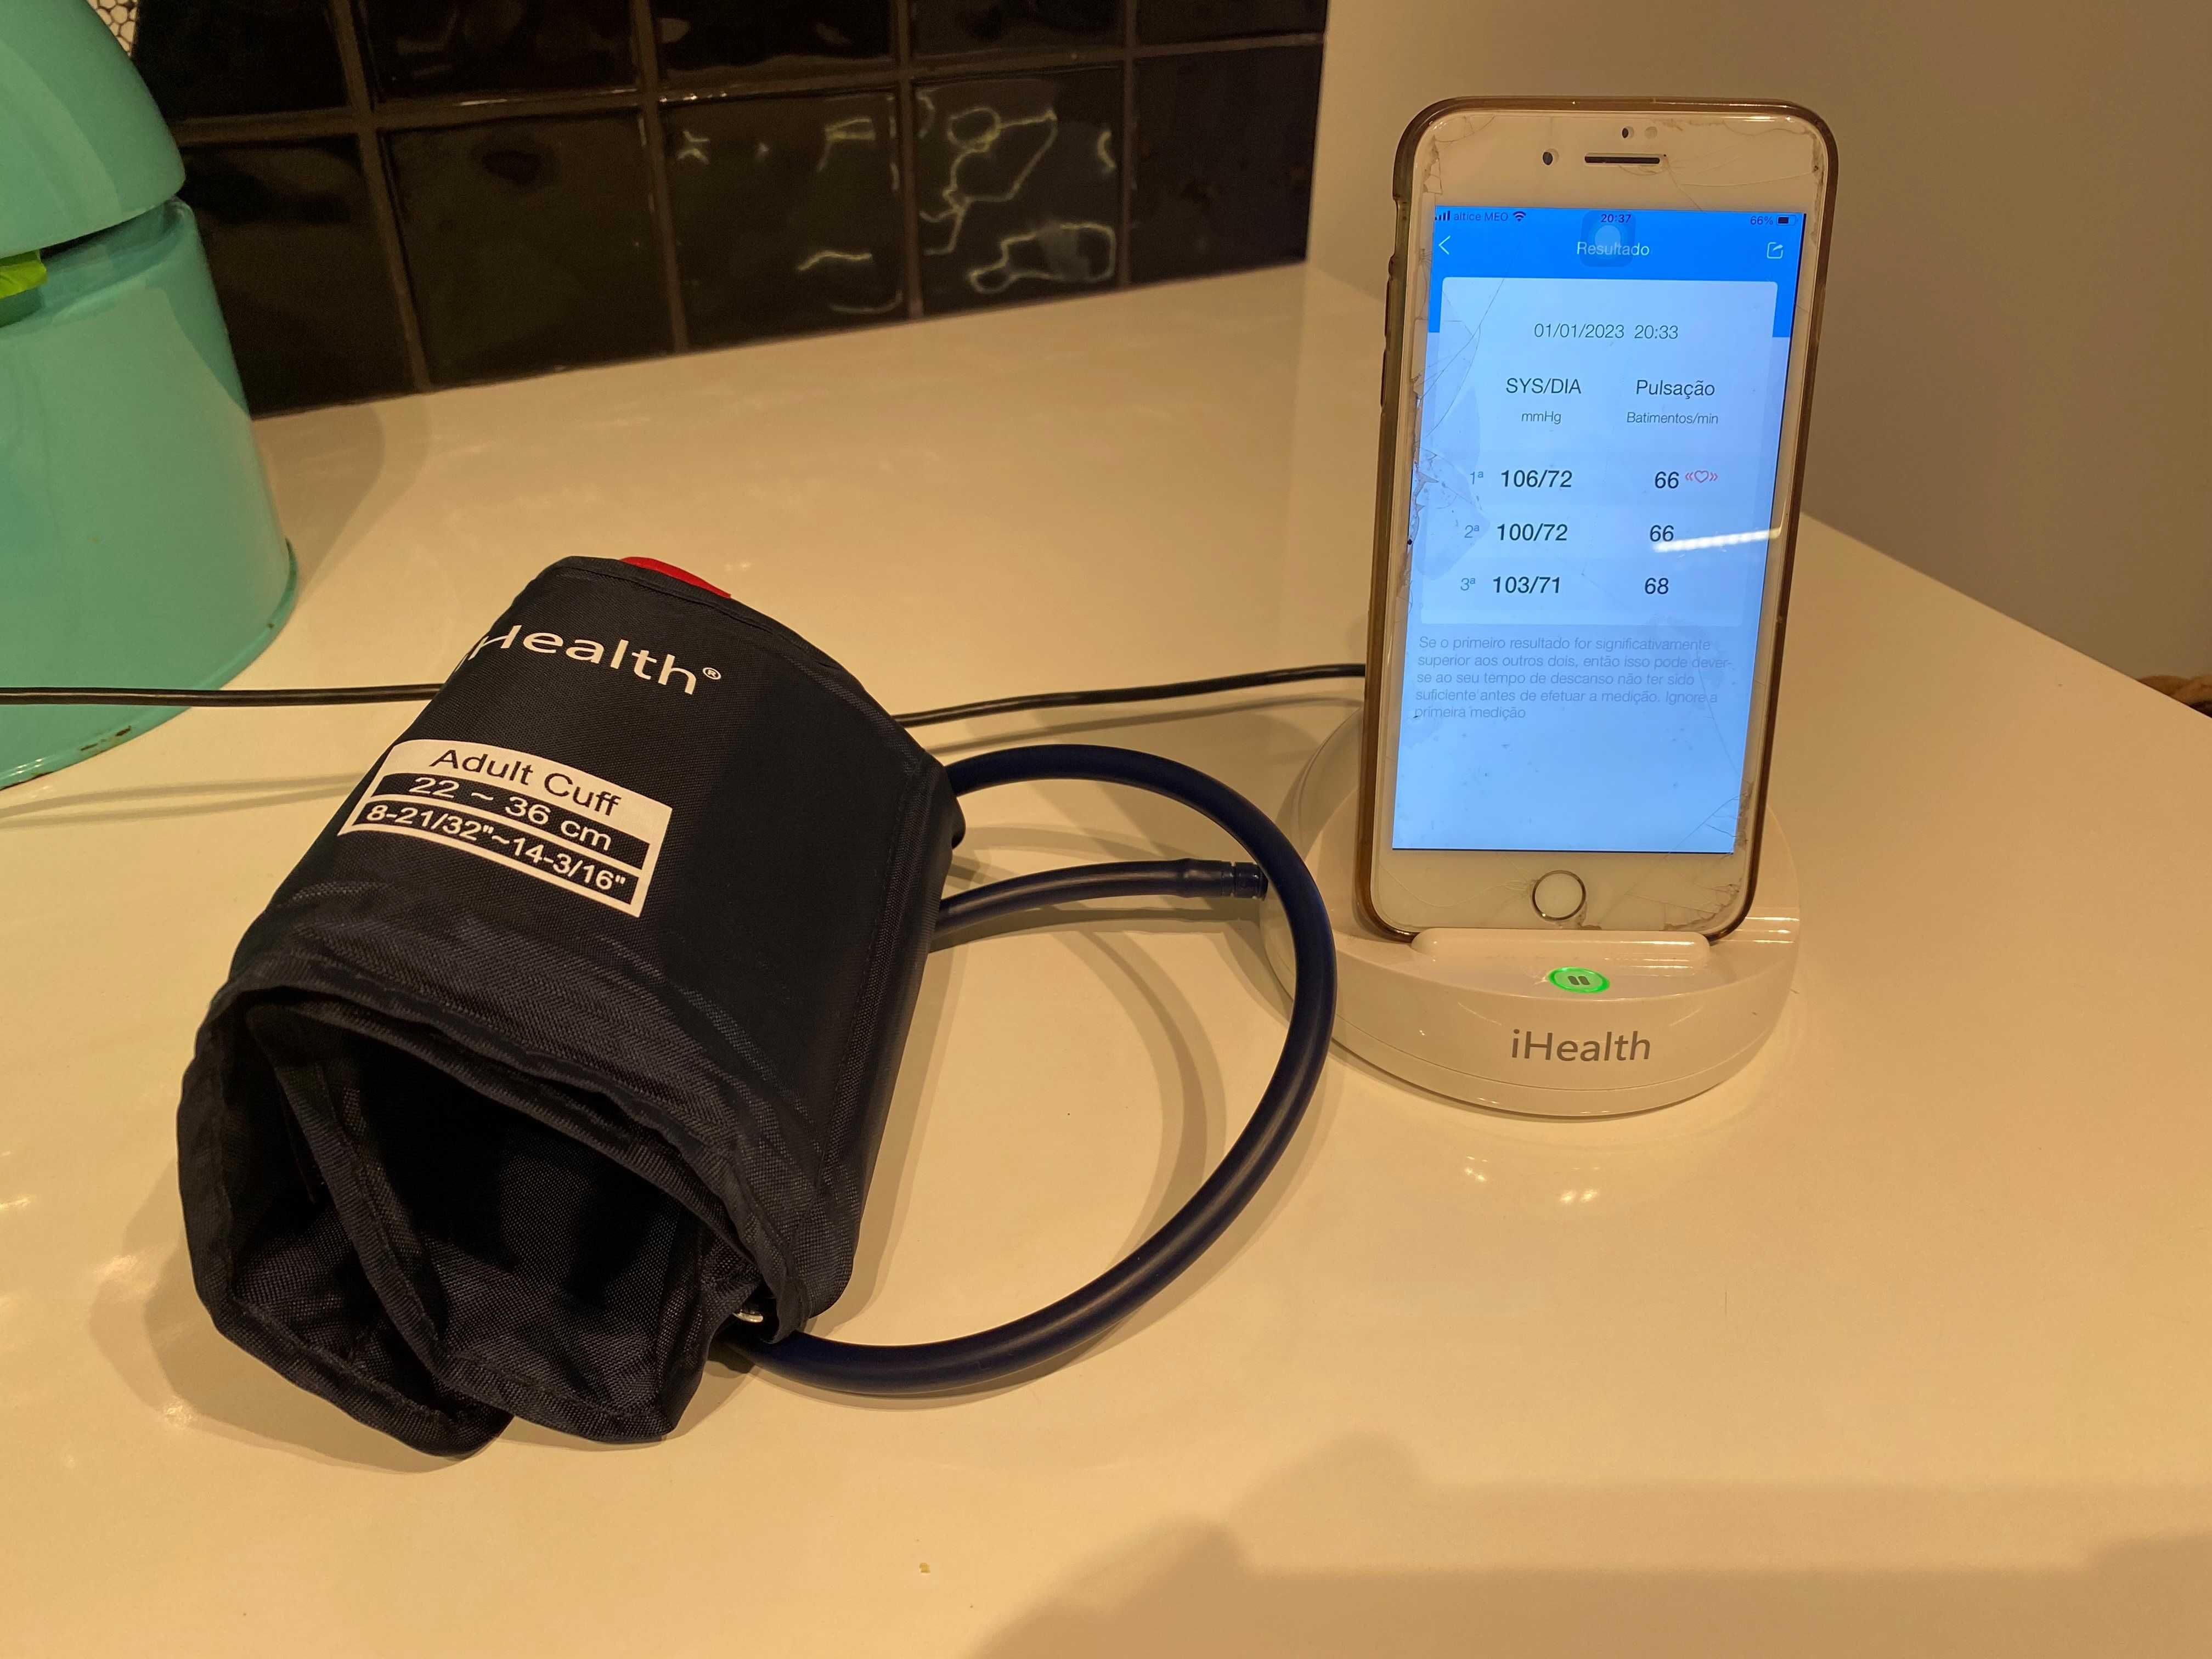 iHealth Ease Wireless Monitor